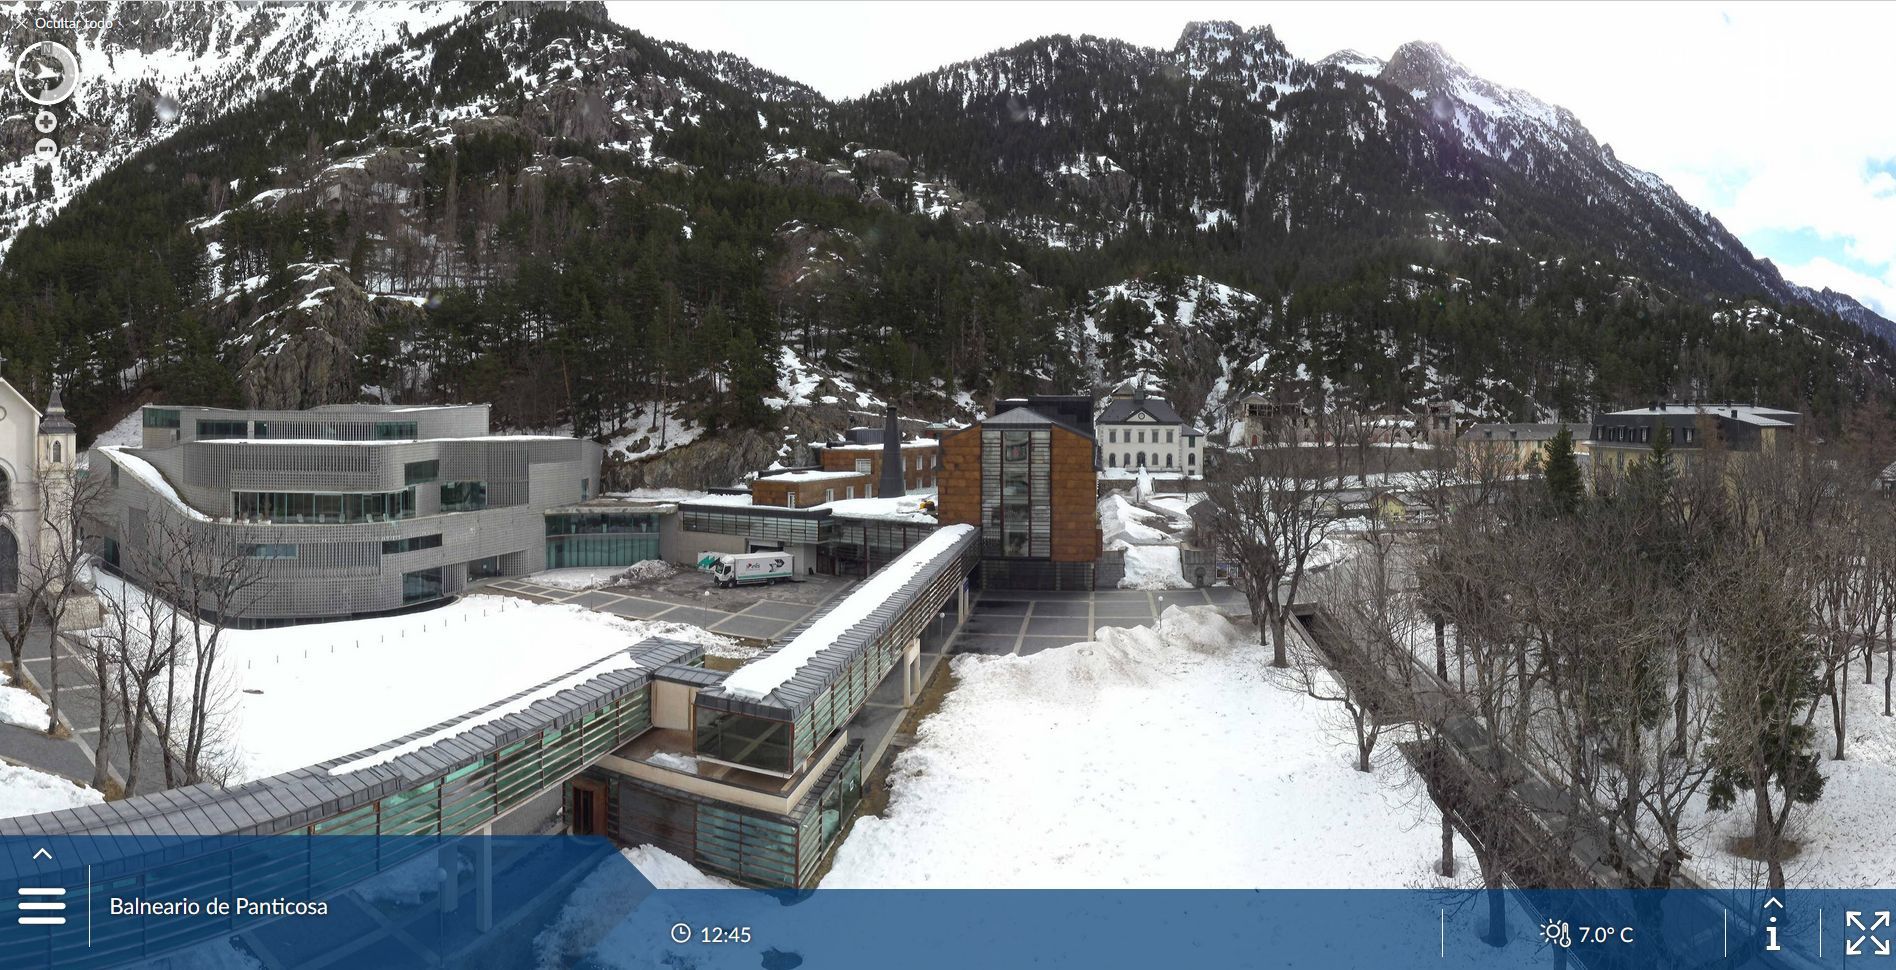 Balneario de Panticosa coloca una webcam pionera el Pirineo - - Nevasport.com